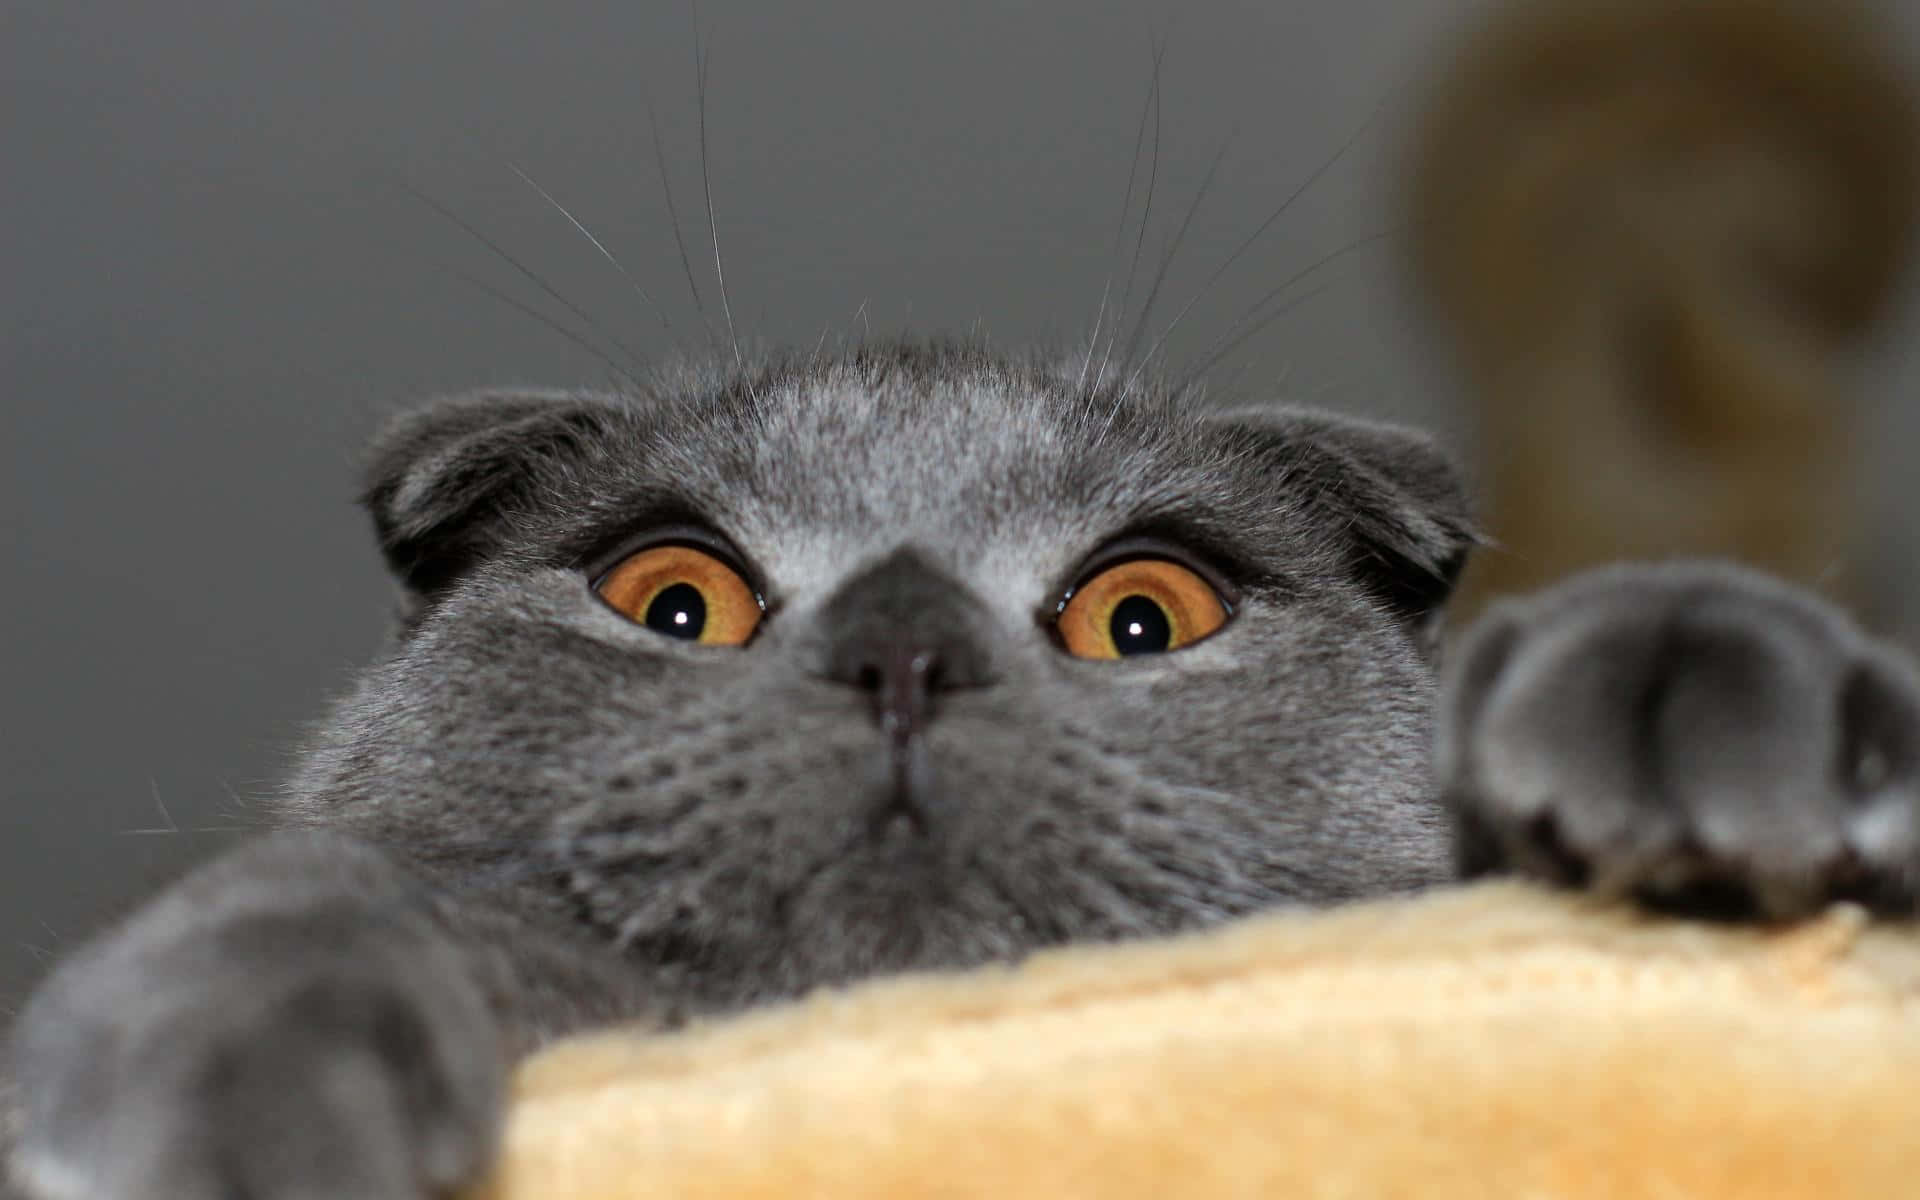 Konstiggrå Katt Hängande På Bild.